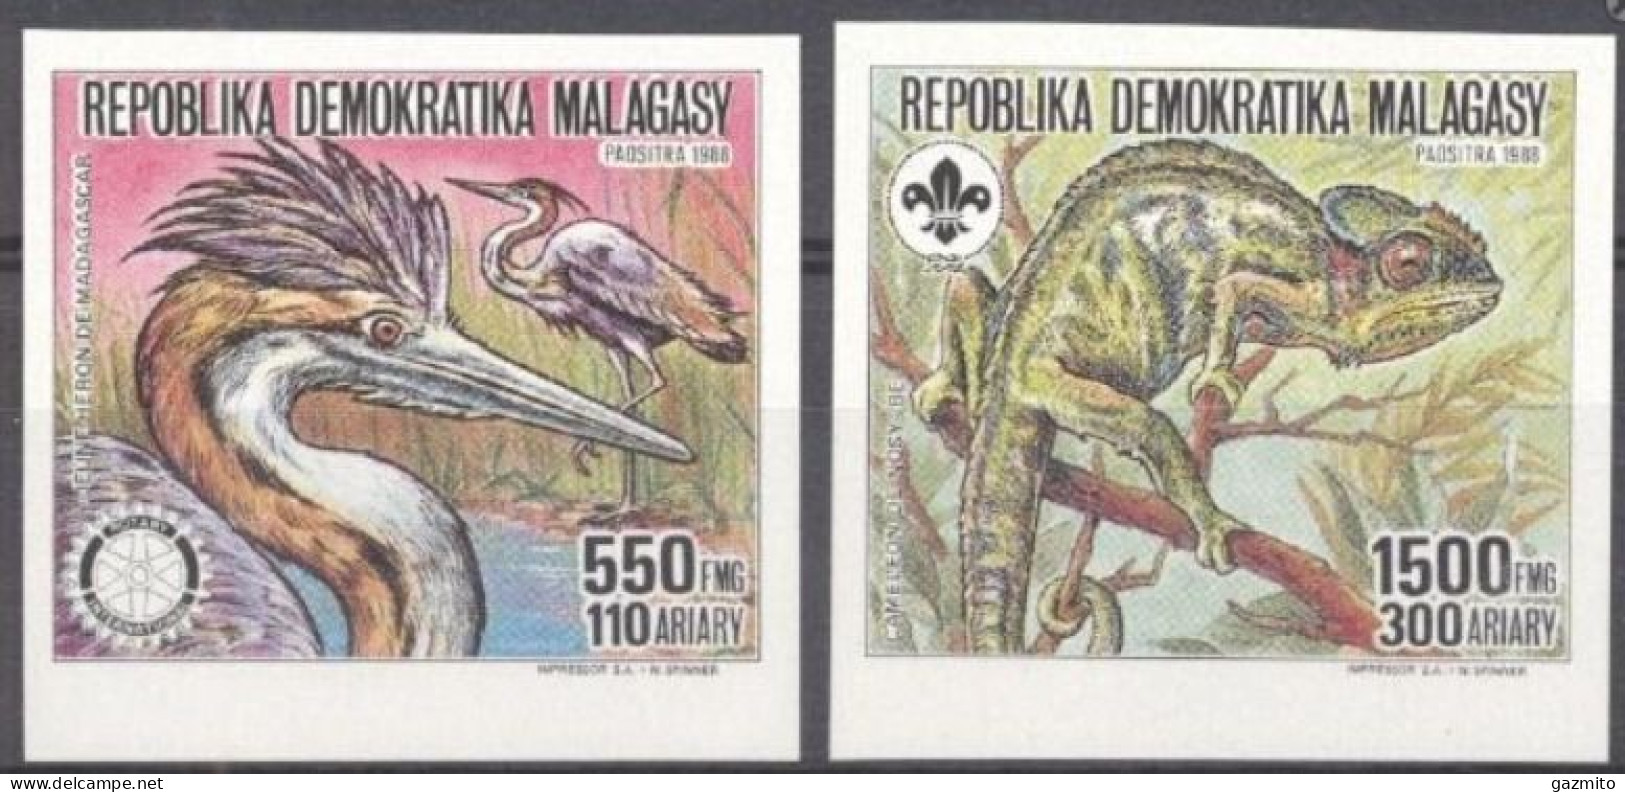 Madagascar 1988, Animals, Camaleonte, Enron, Rotary, Scout, 2val IMPERFORATED - Storks & Long-legged Wading Birds